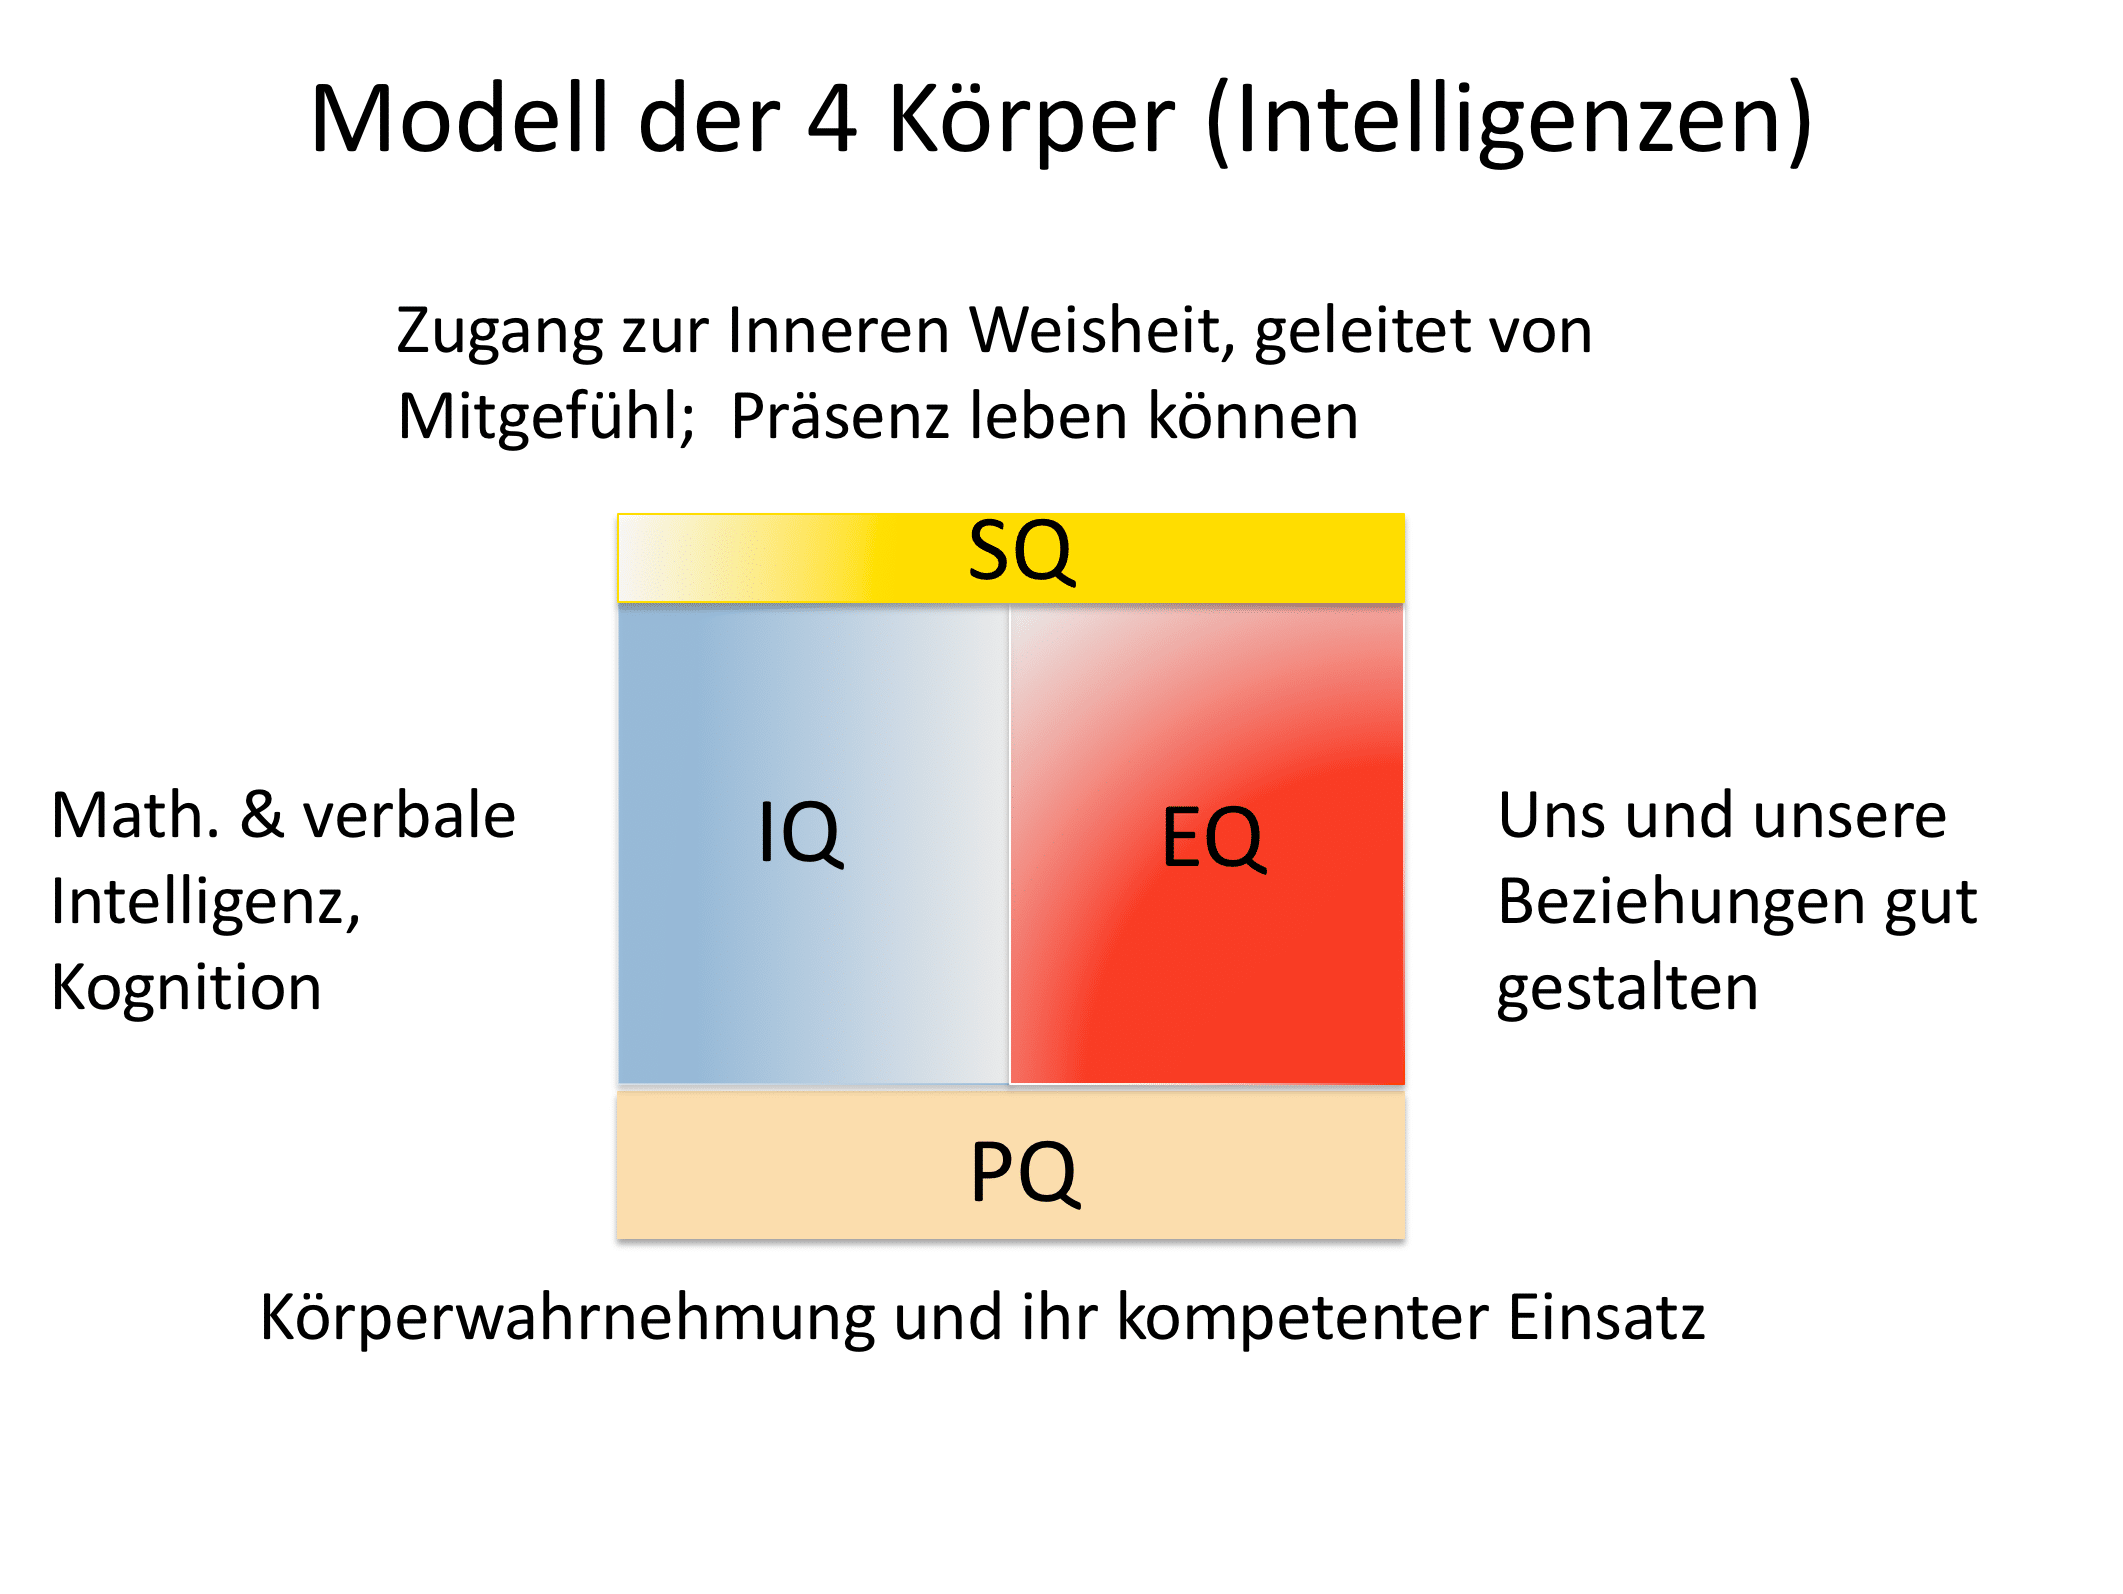 Modell der 4 Intelligenzen einer Persönlichkeit